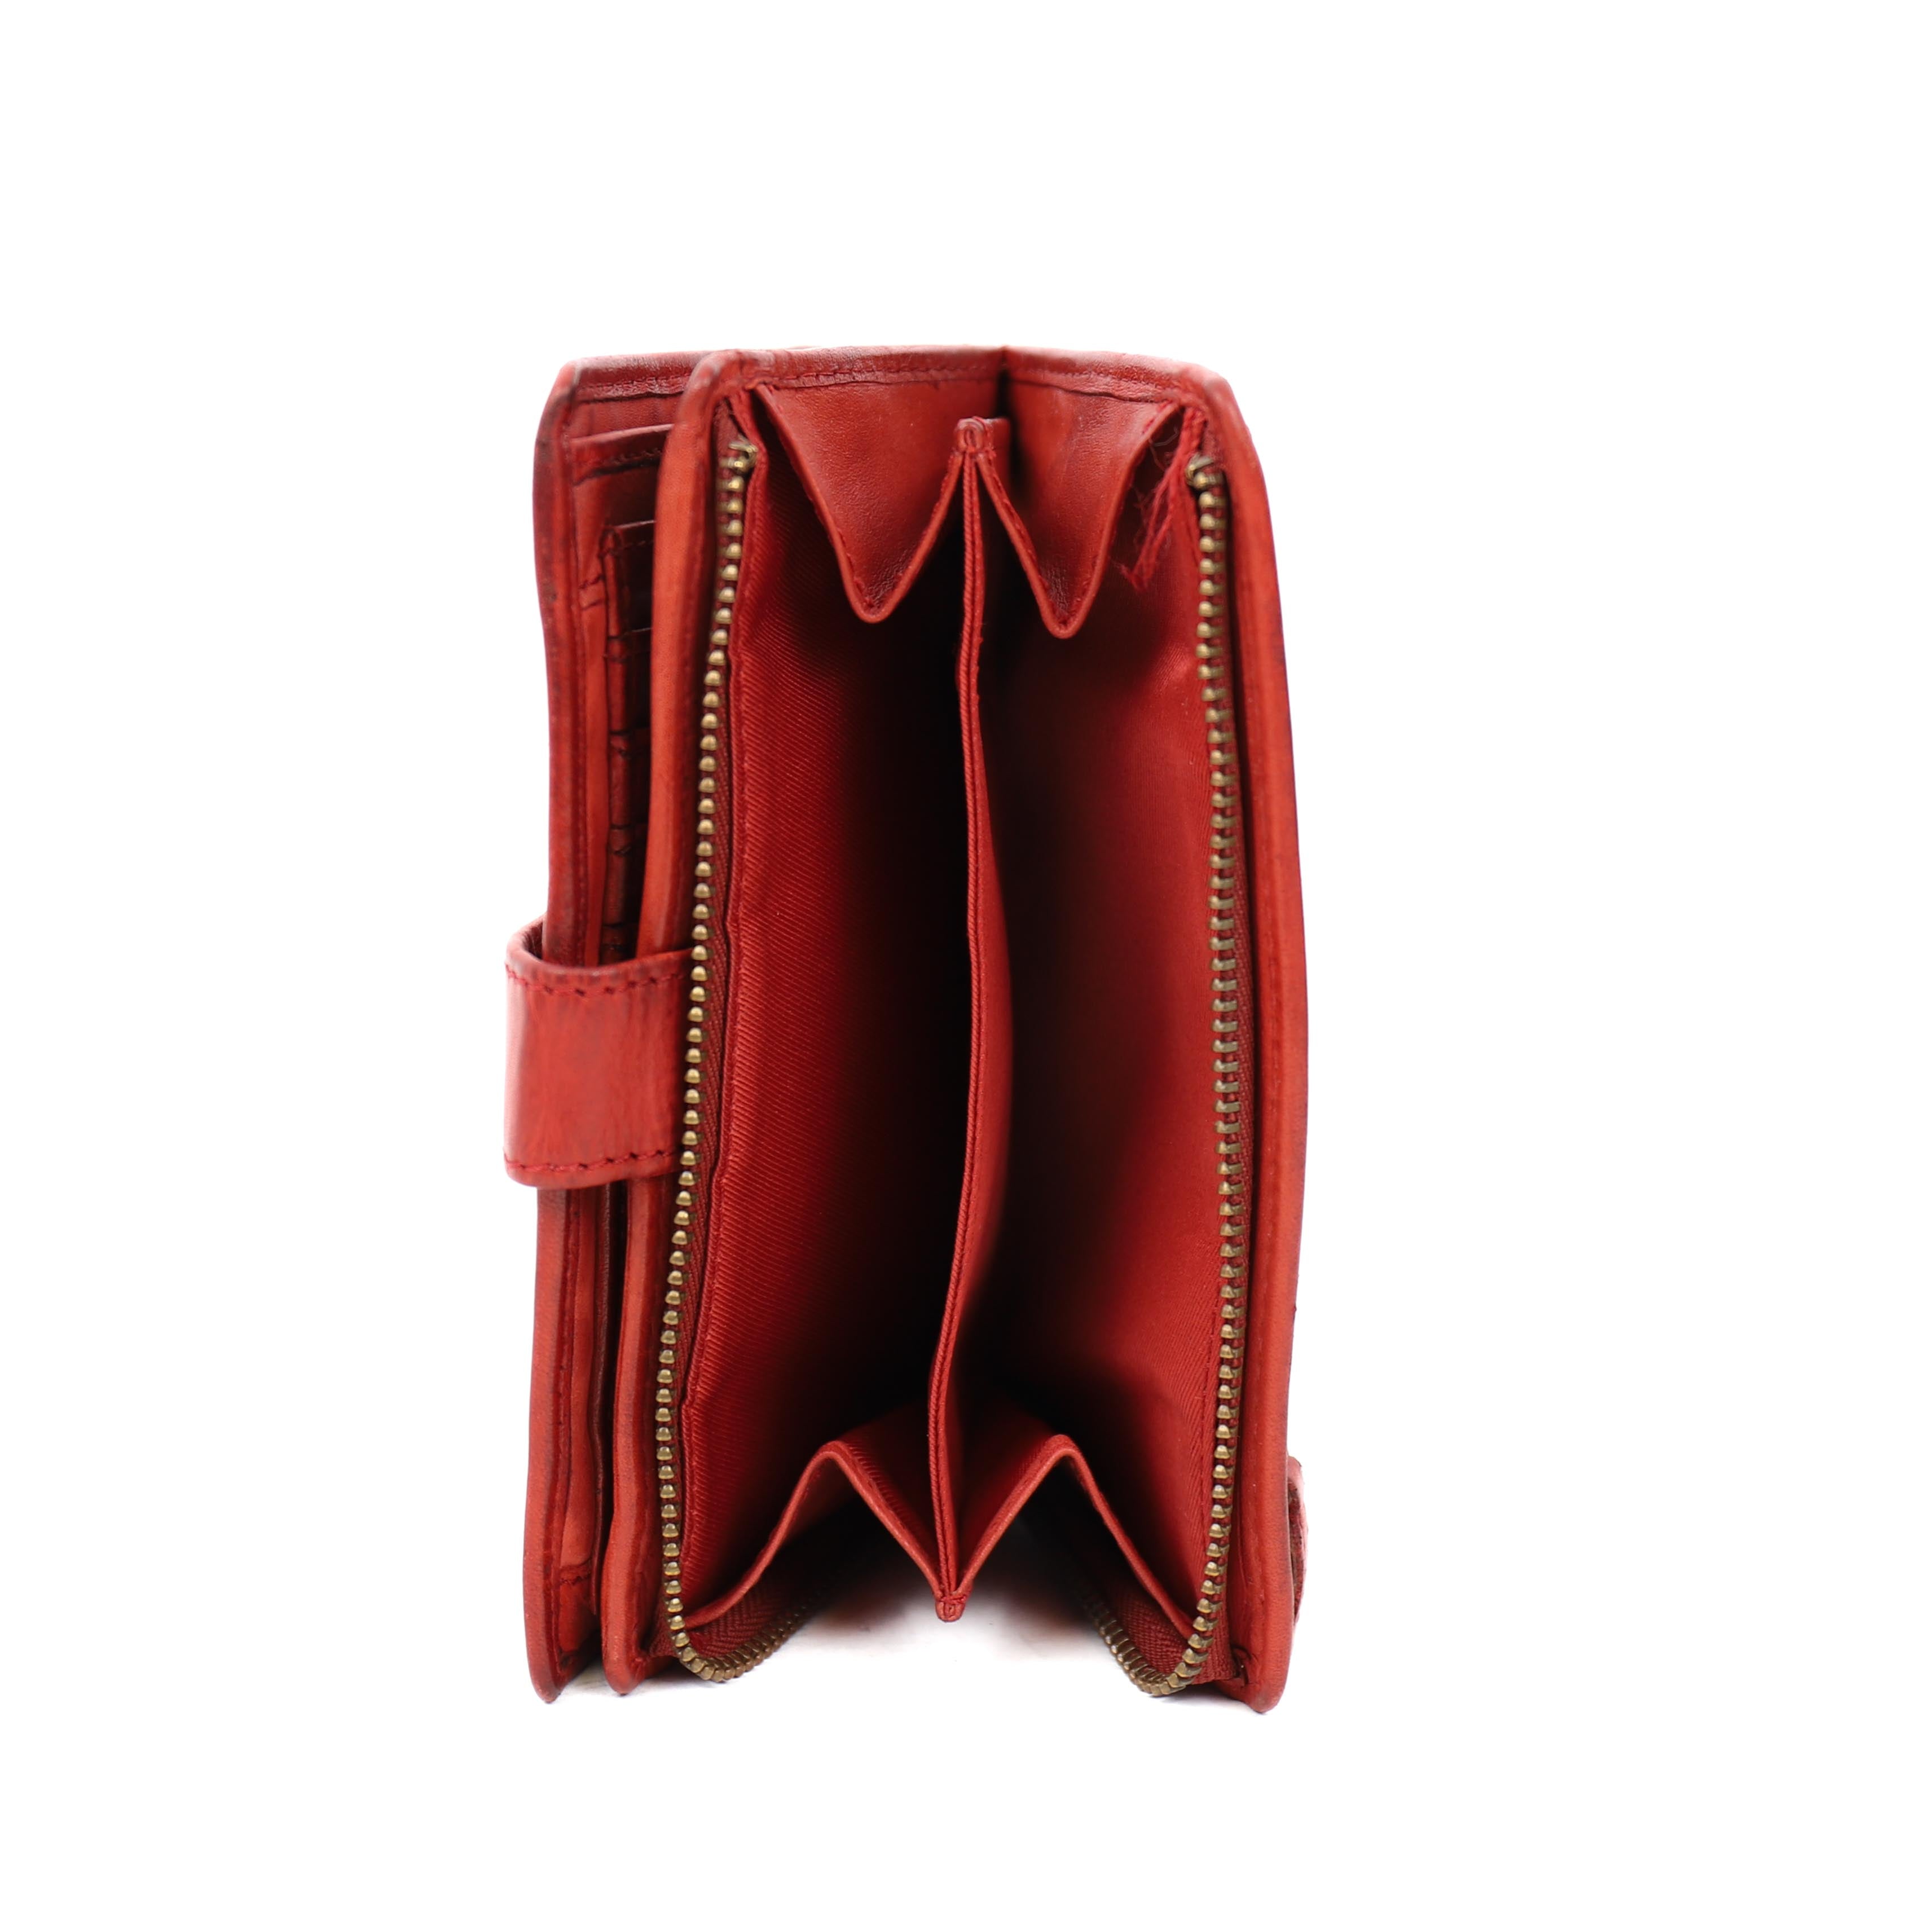 Portemonnee 'Sanne' rood studs - CL 15087